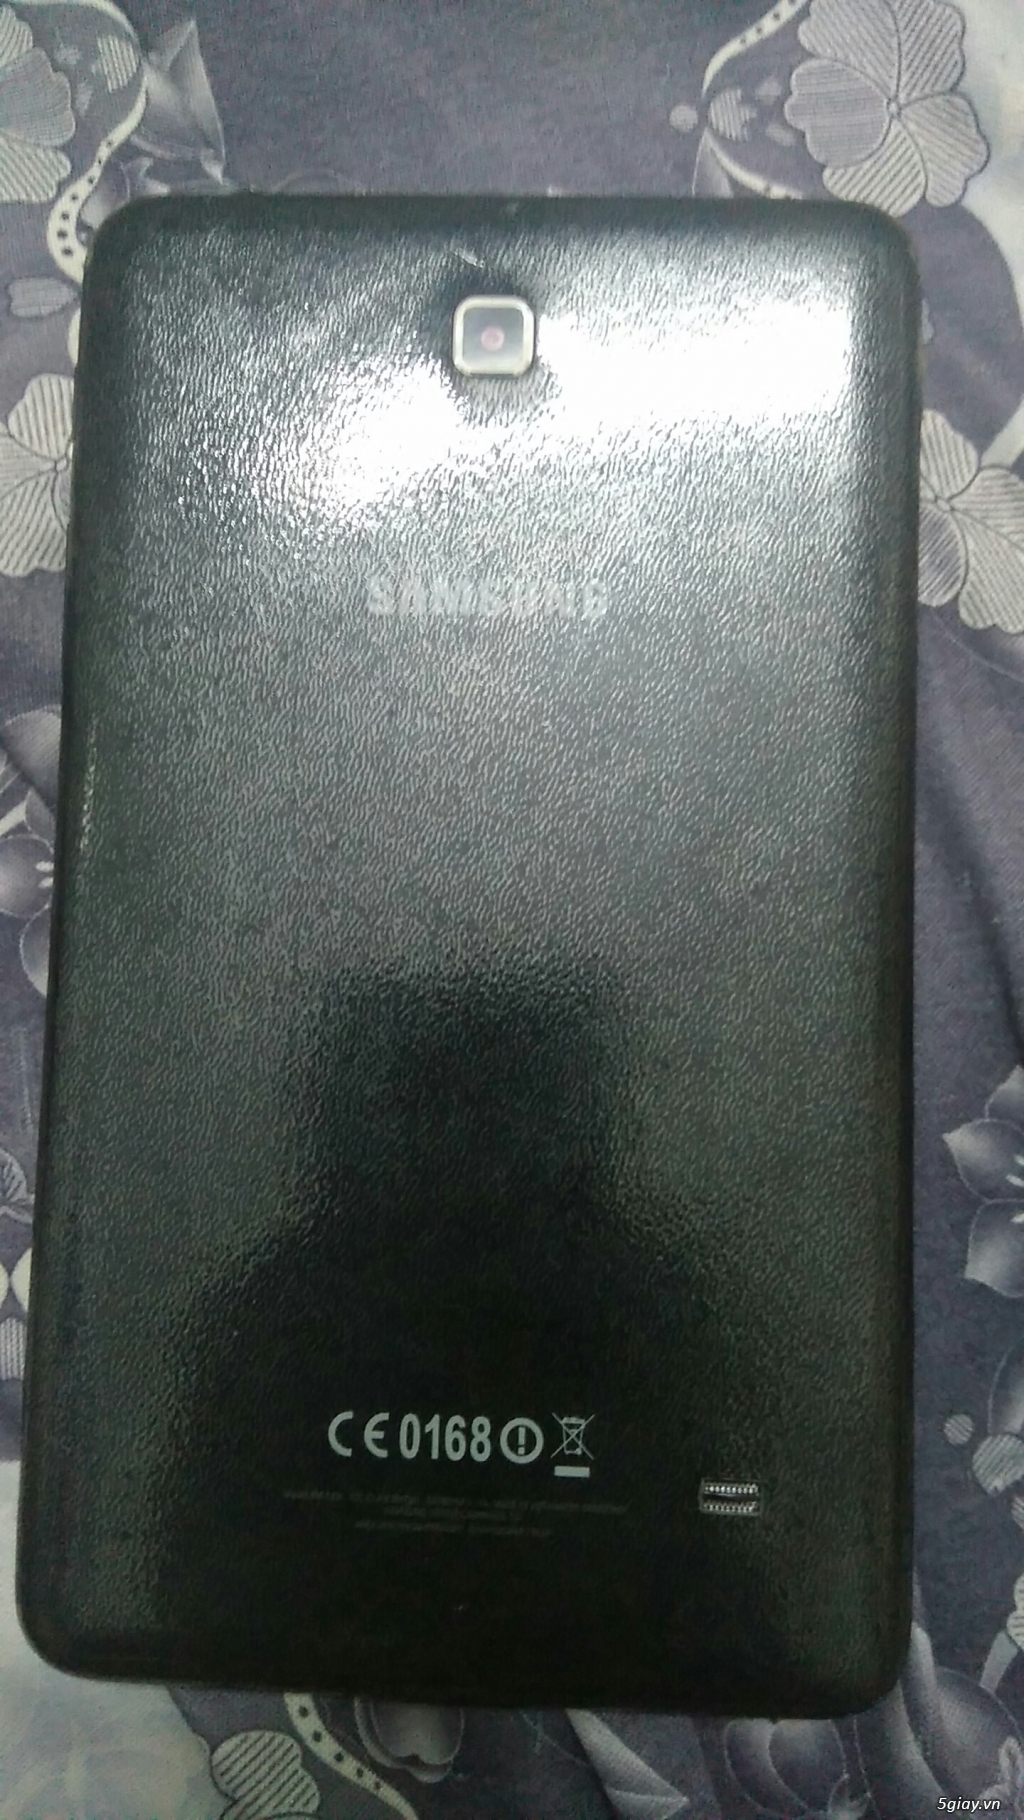 Samsung Galaxy tab 4 - 1